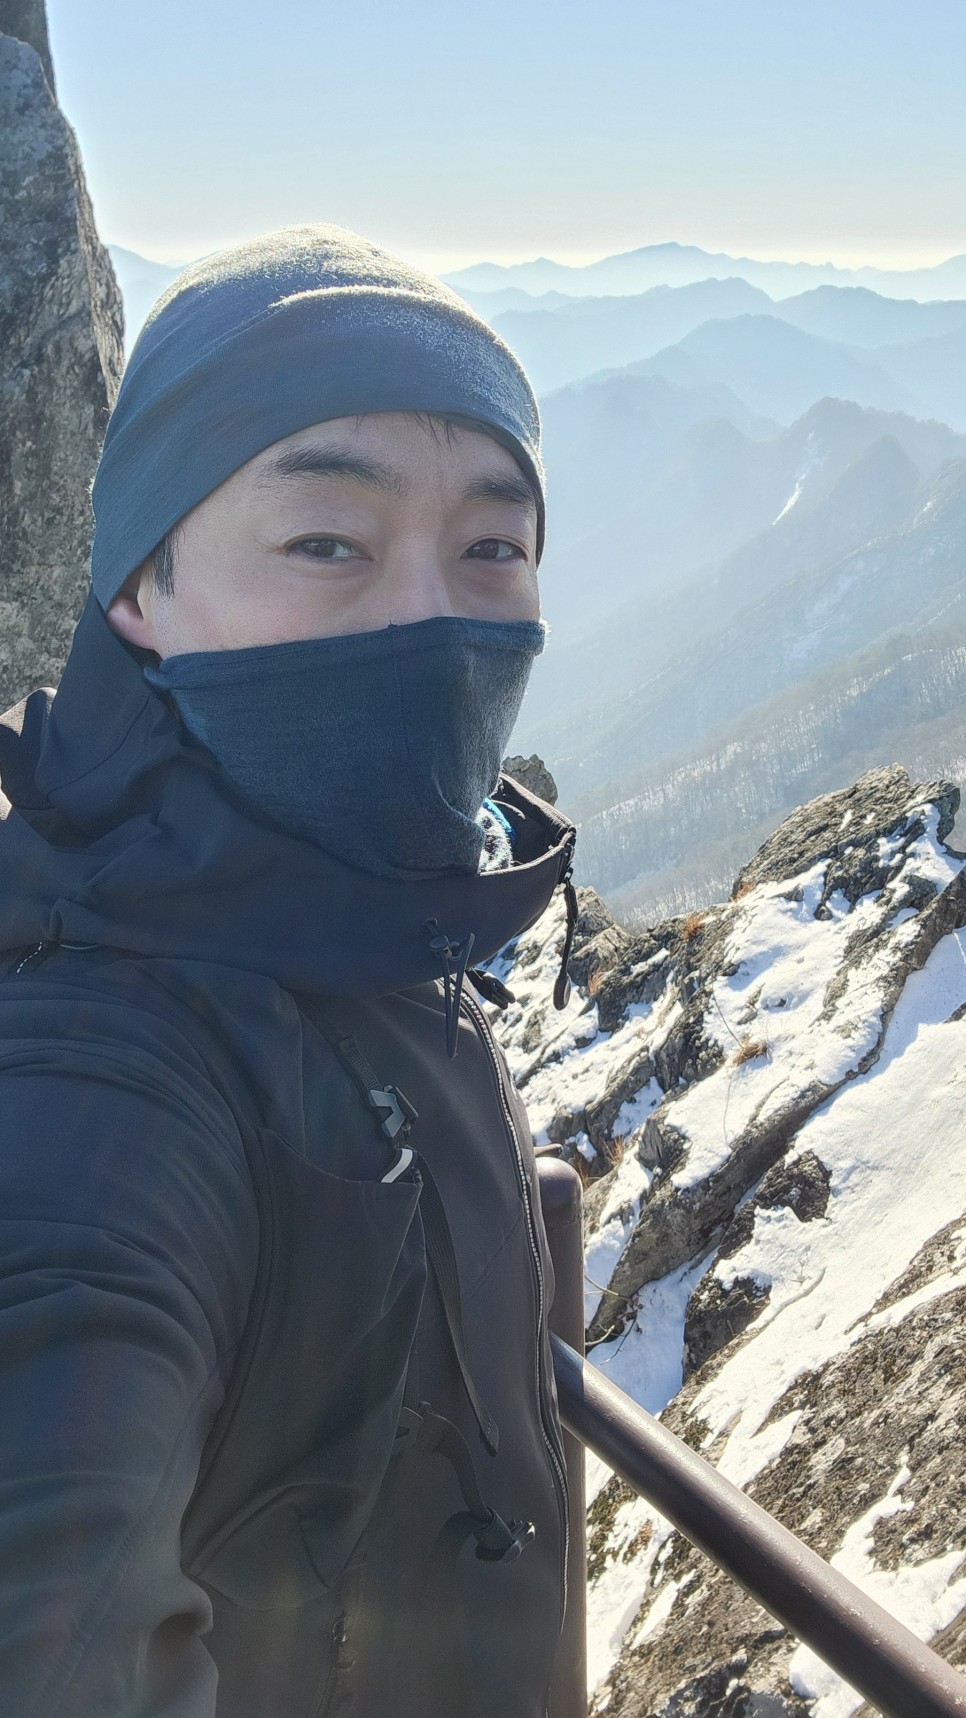 월악산 보덕암 - 하봉 - 중봉 - 영봉 난이도 '매우어려움'